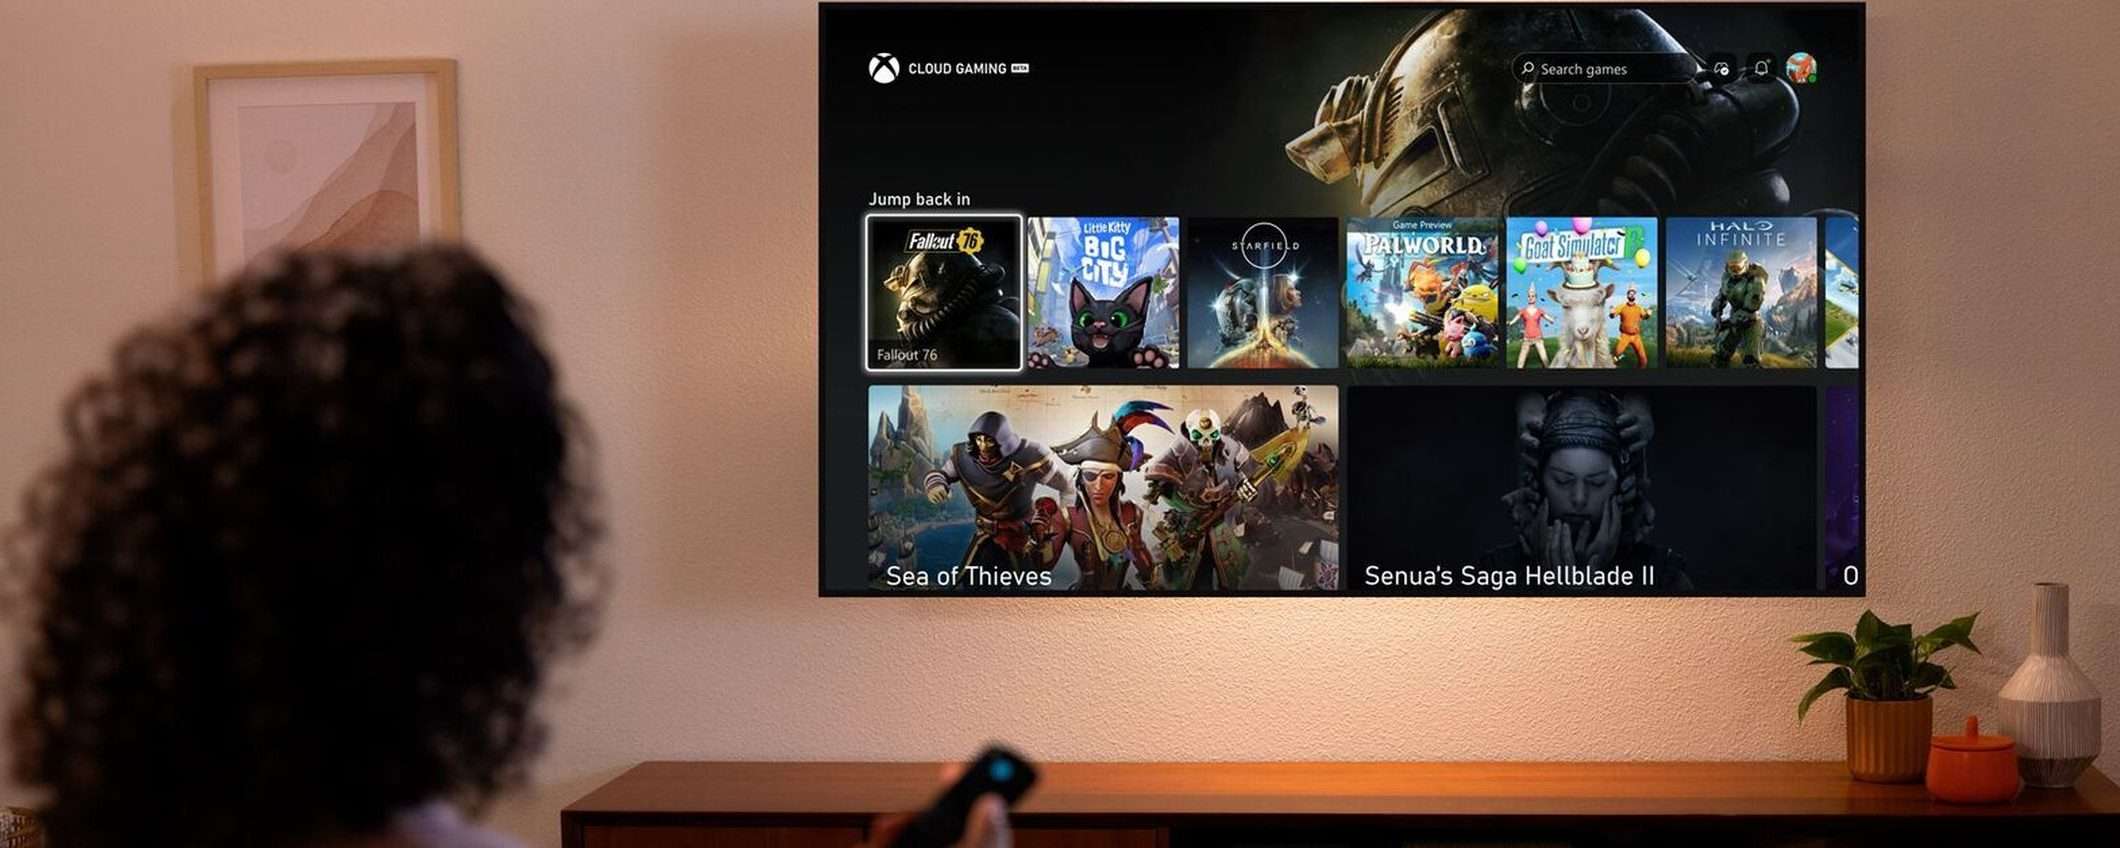 Xbox Cloud Gaming su Amazon Fire TV Stick a luglio